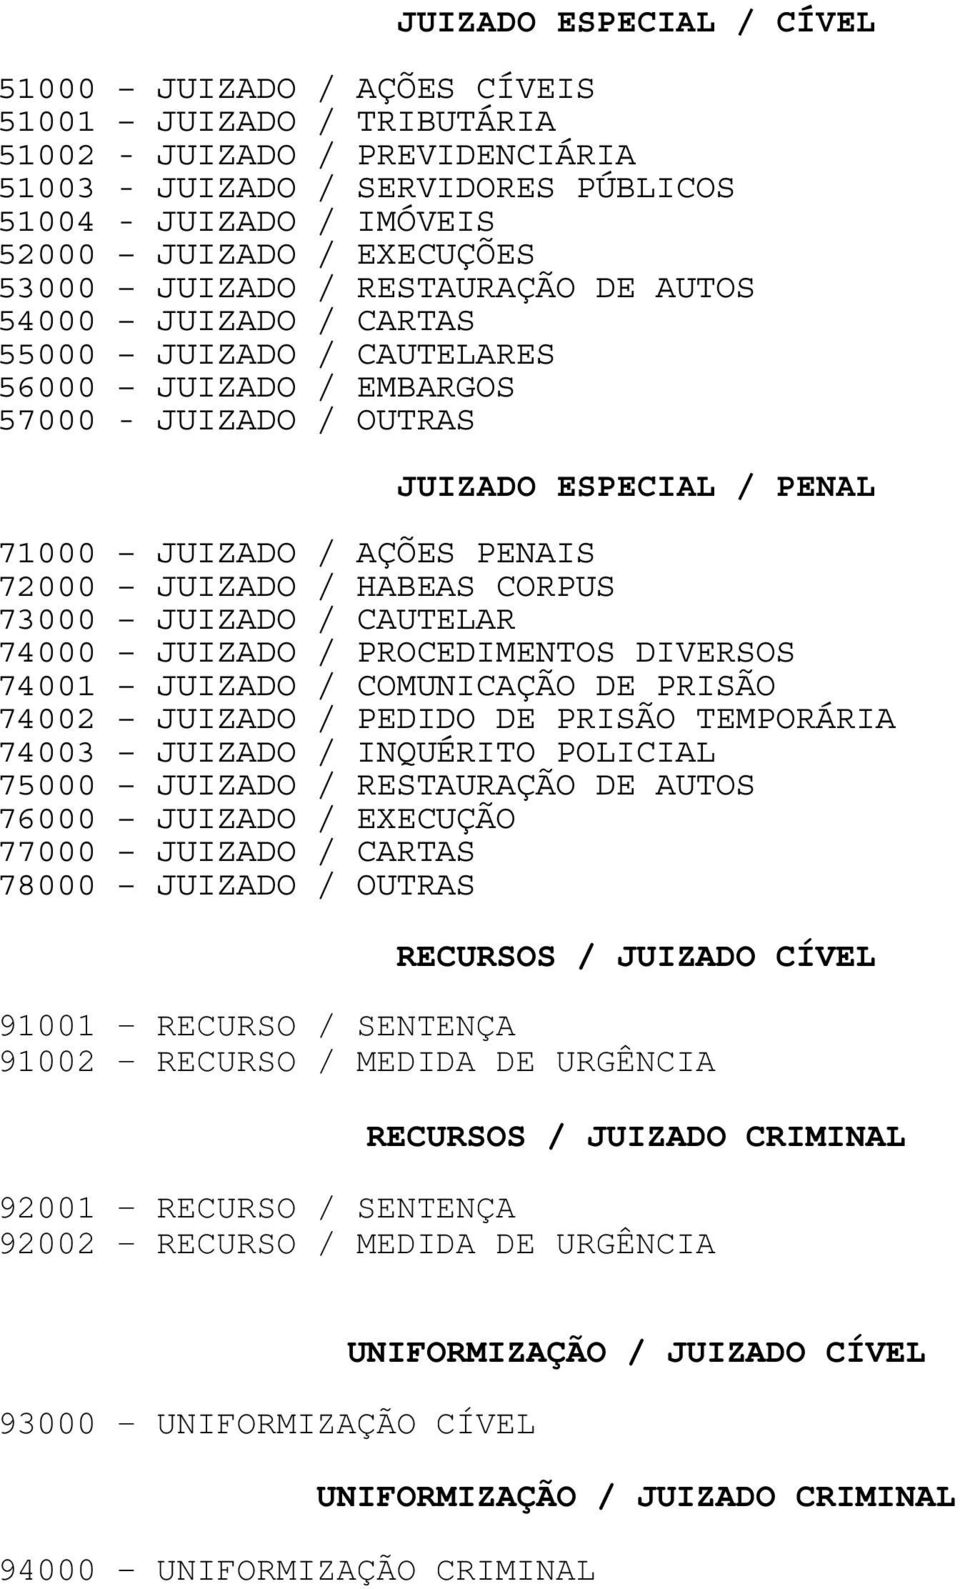 PENAIS 72000 JUIZADO / HABEAS CORPUS 73000 JUIZADO / CAUTELAR 74000 JUIZADO / PROCEDIMENTOS DIVERSOS 74001 JUIZADO / COMUNICAÇÃO DE PRISÃO 74002 JUIZADO / PEDIDO DE PRISÃO TEMPORÁRIA 74003 JUIZADO /